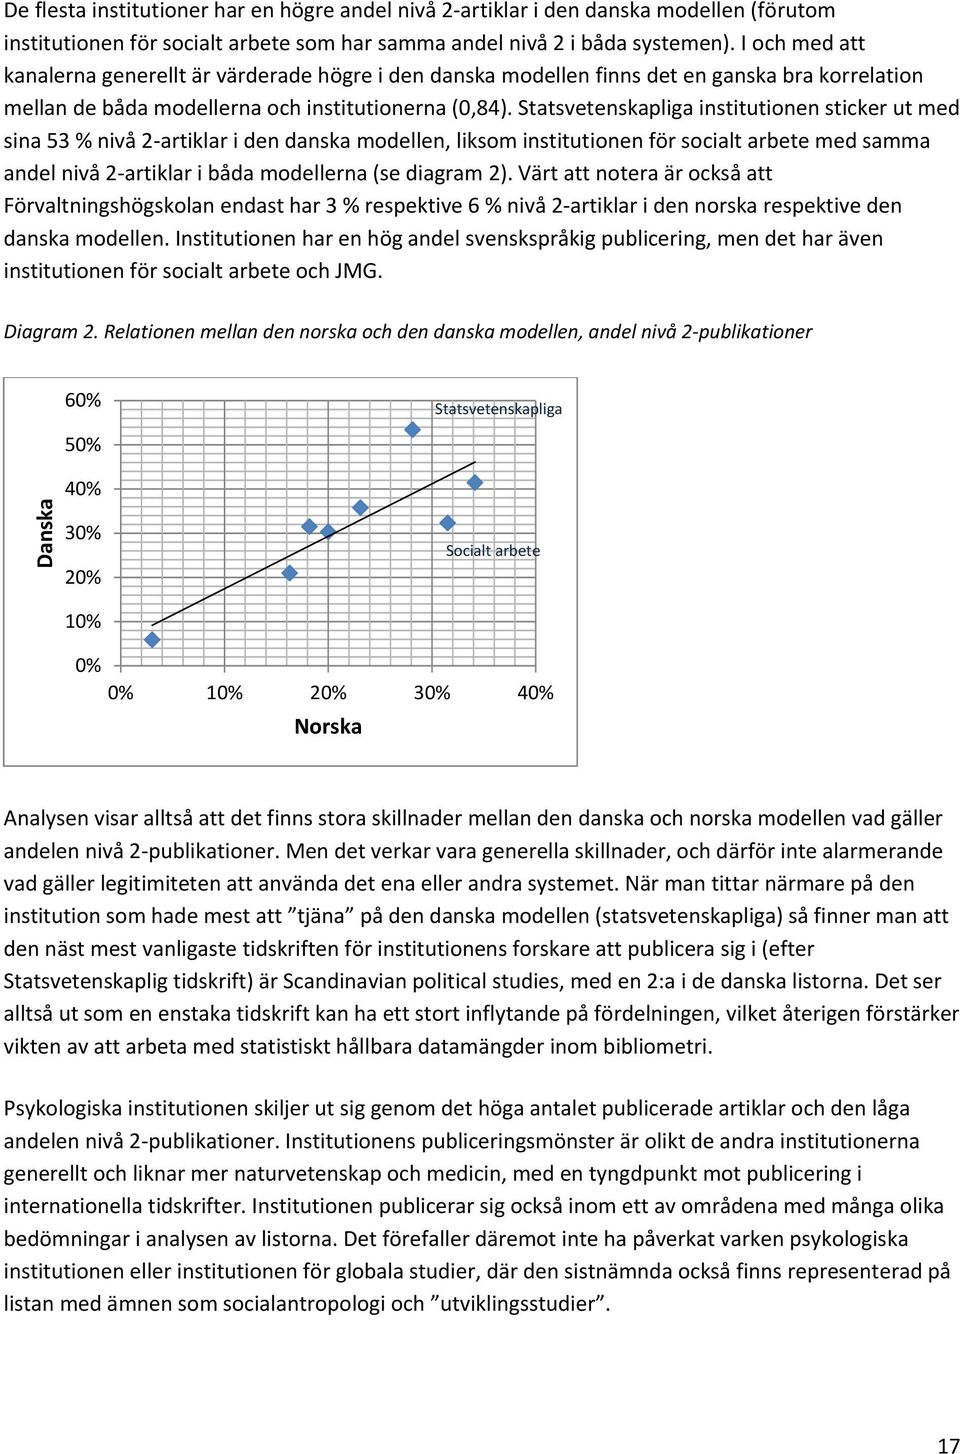 Statsvetenskapliga institutionen sticker ut med sina 53 % nivå 2 artiklar i den danska modellen, liksom institutionen för socialt arbete med samma andel nivå 2 artiklar i båda modellerna (se diagram